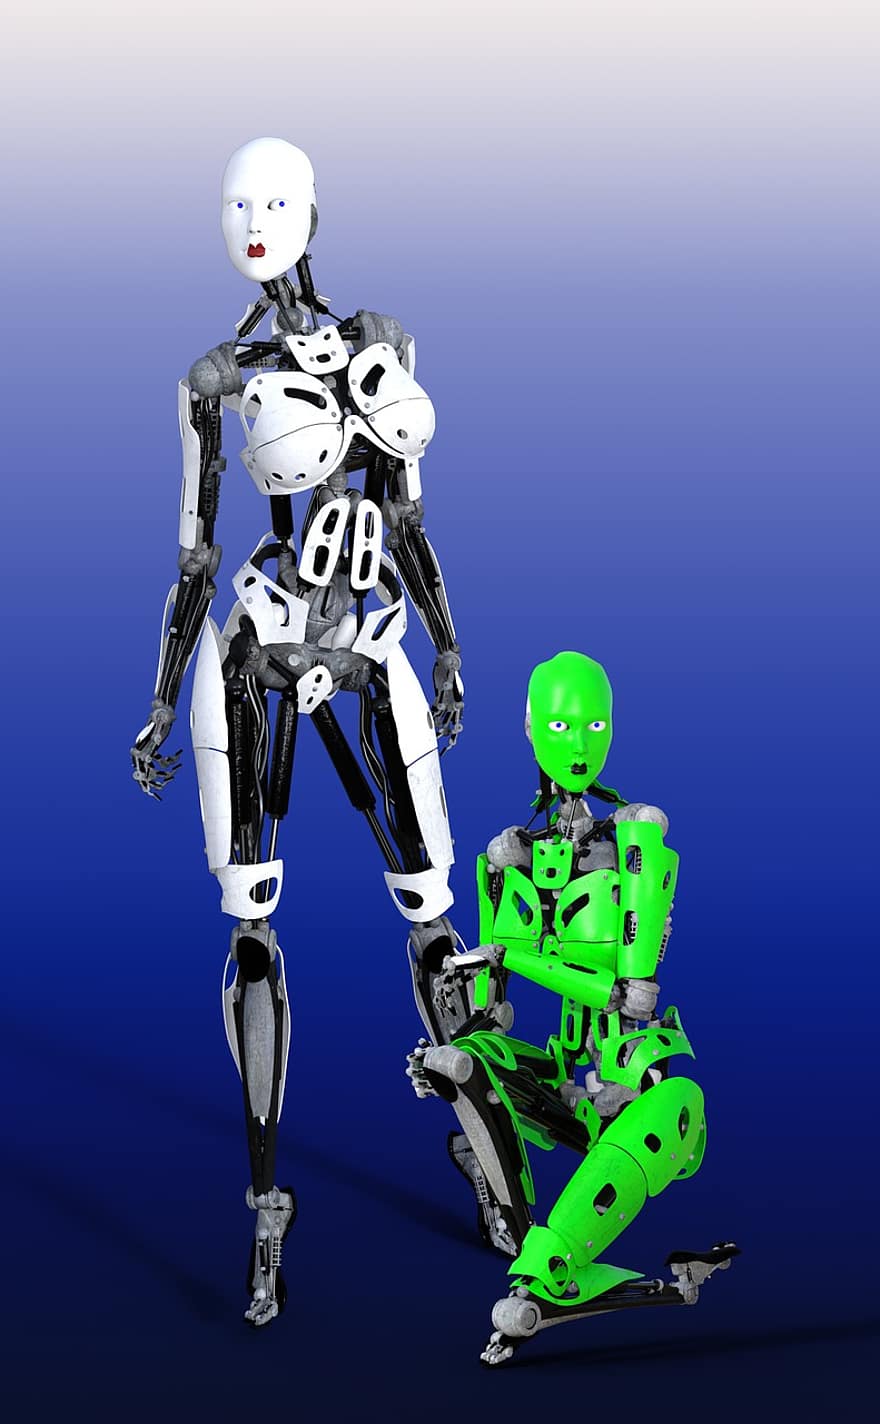 robotti, kyborgi, keinotekoinen, Bionic, älykkyys, automatisoitu, ai